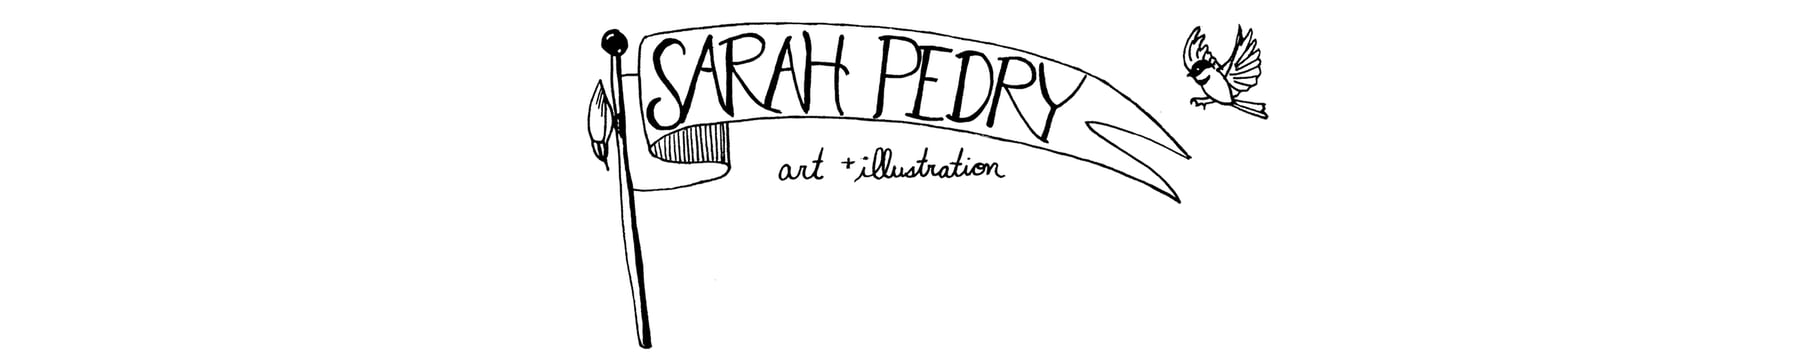 Sarah Pedry